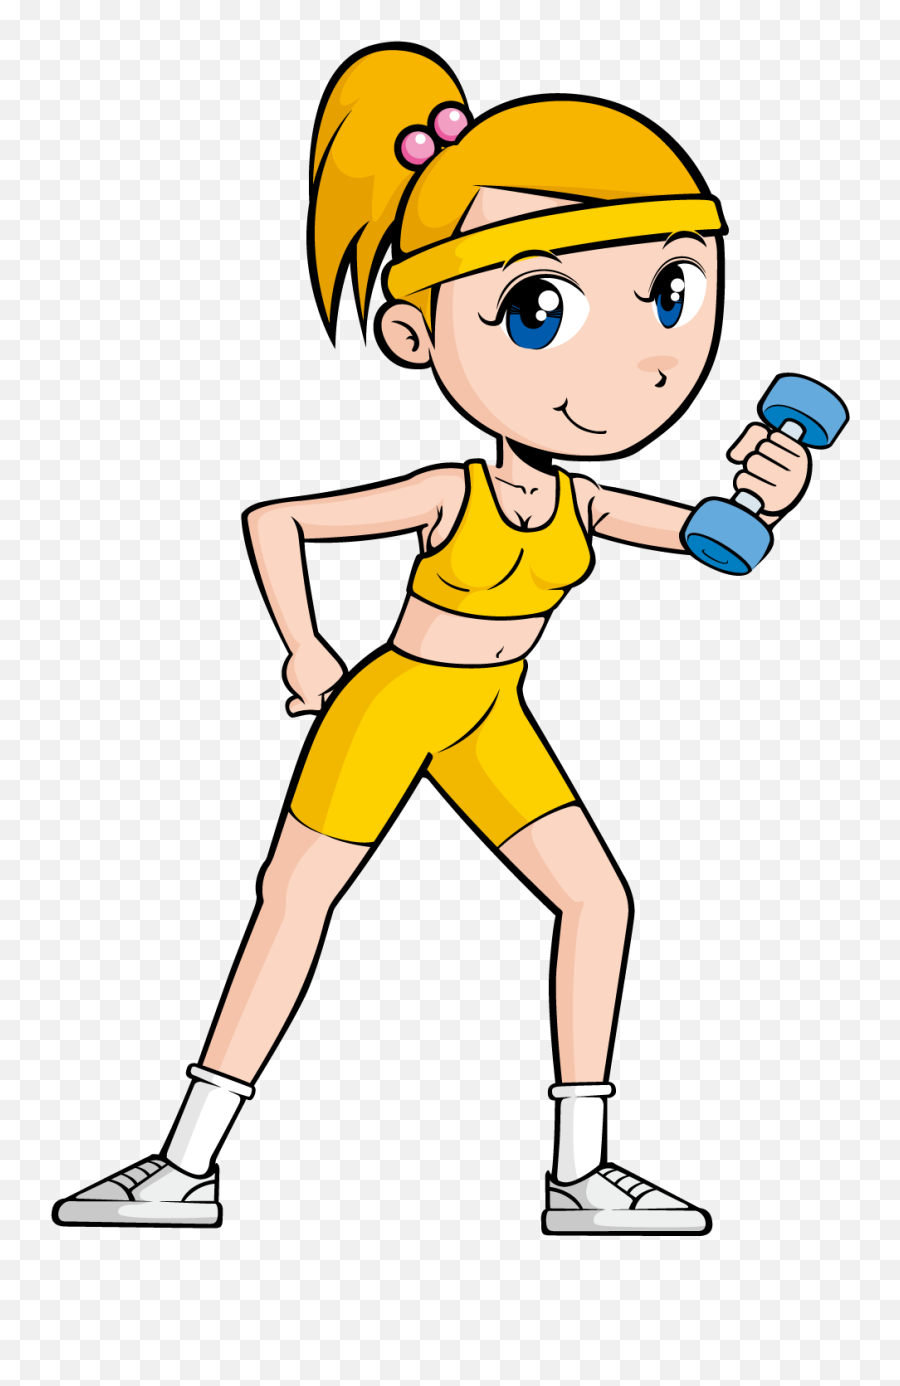 Clipart Exercise Girl Exercise Clipart Exercise Girl - Una Persona Haciendo Ejercicio Dibujo Emoji,Exercise Clipart